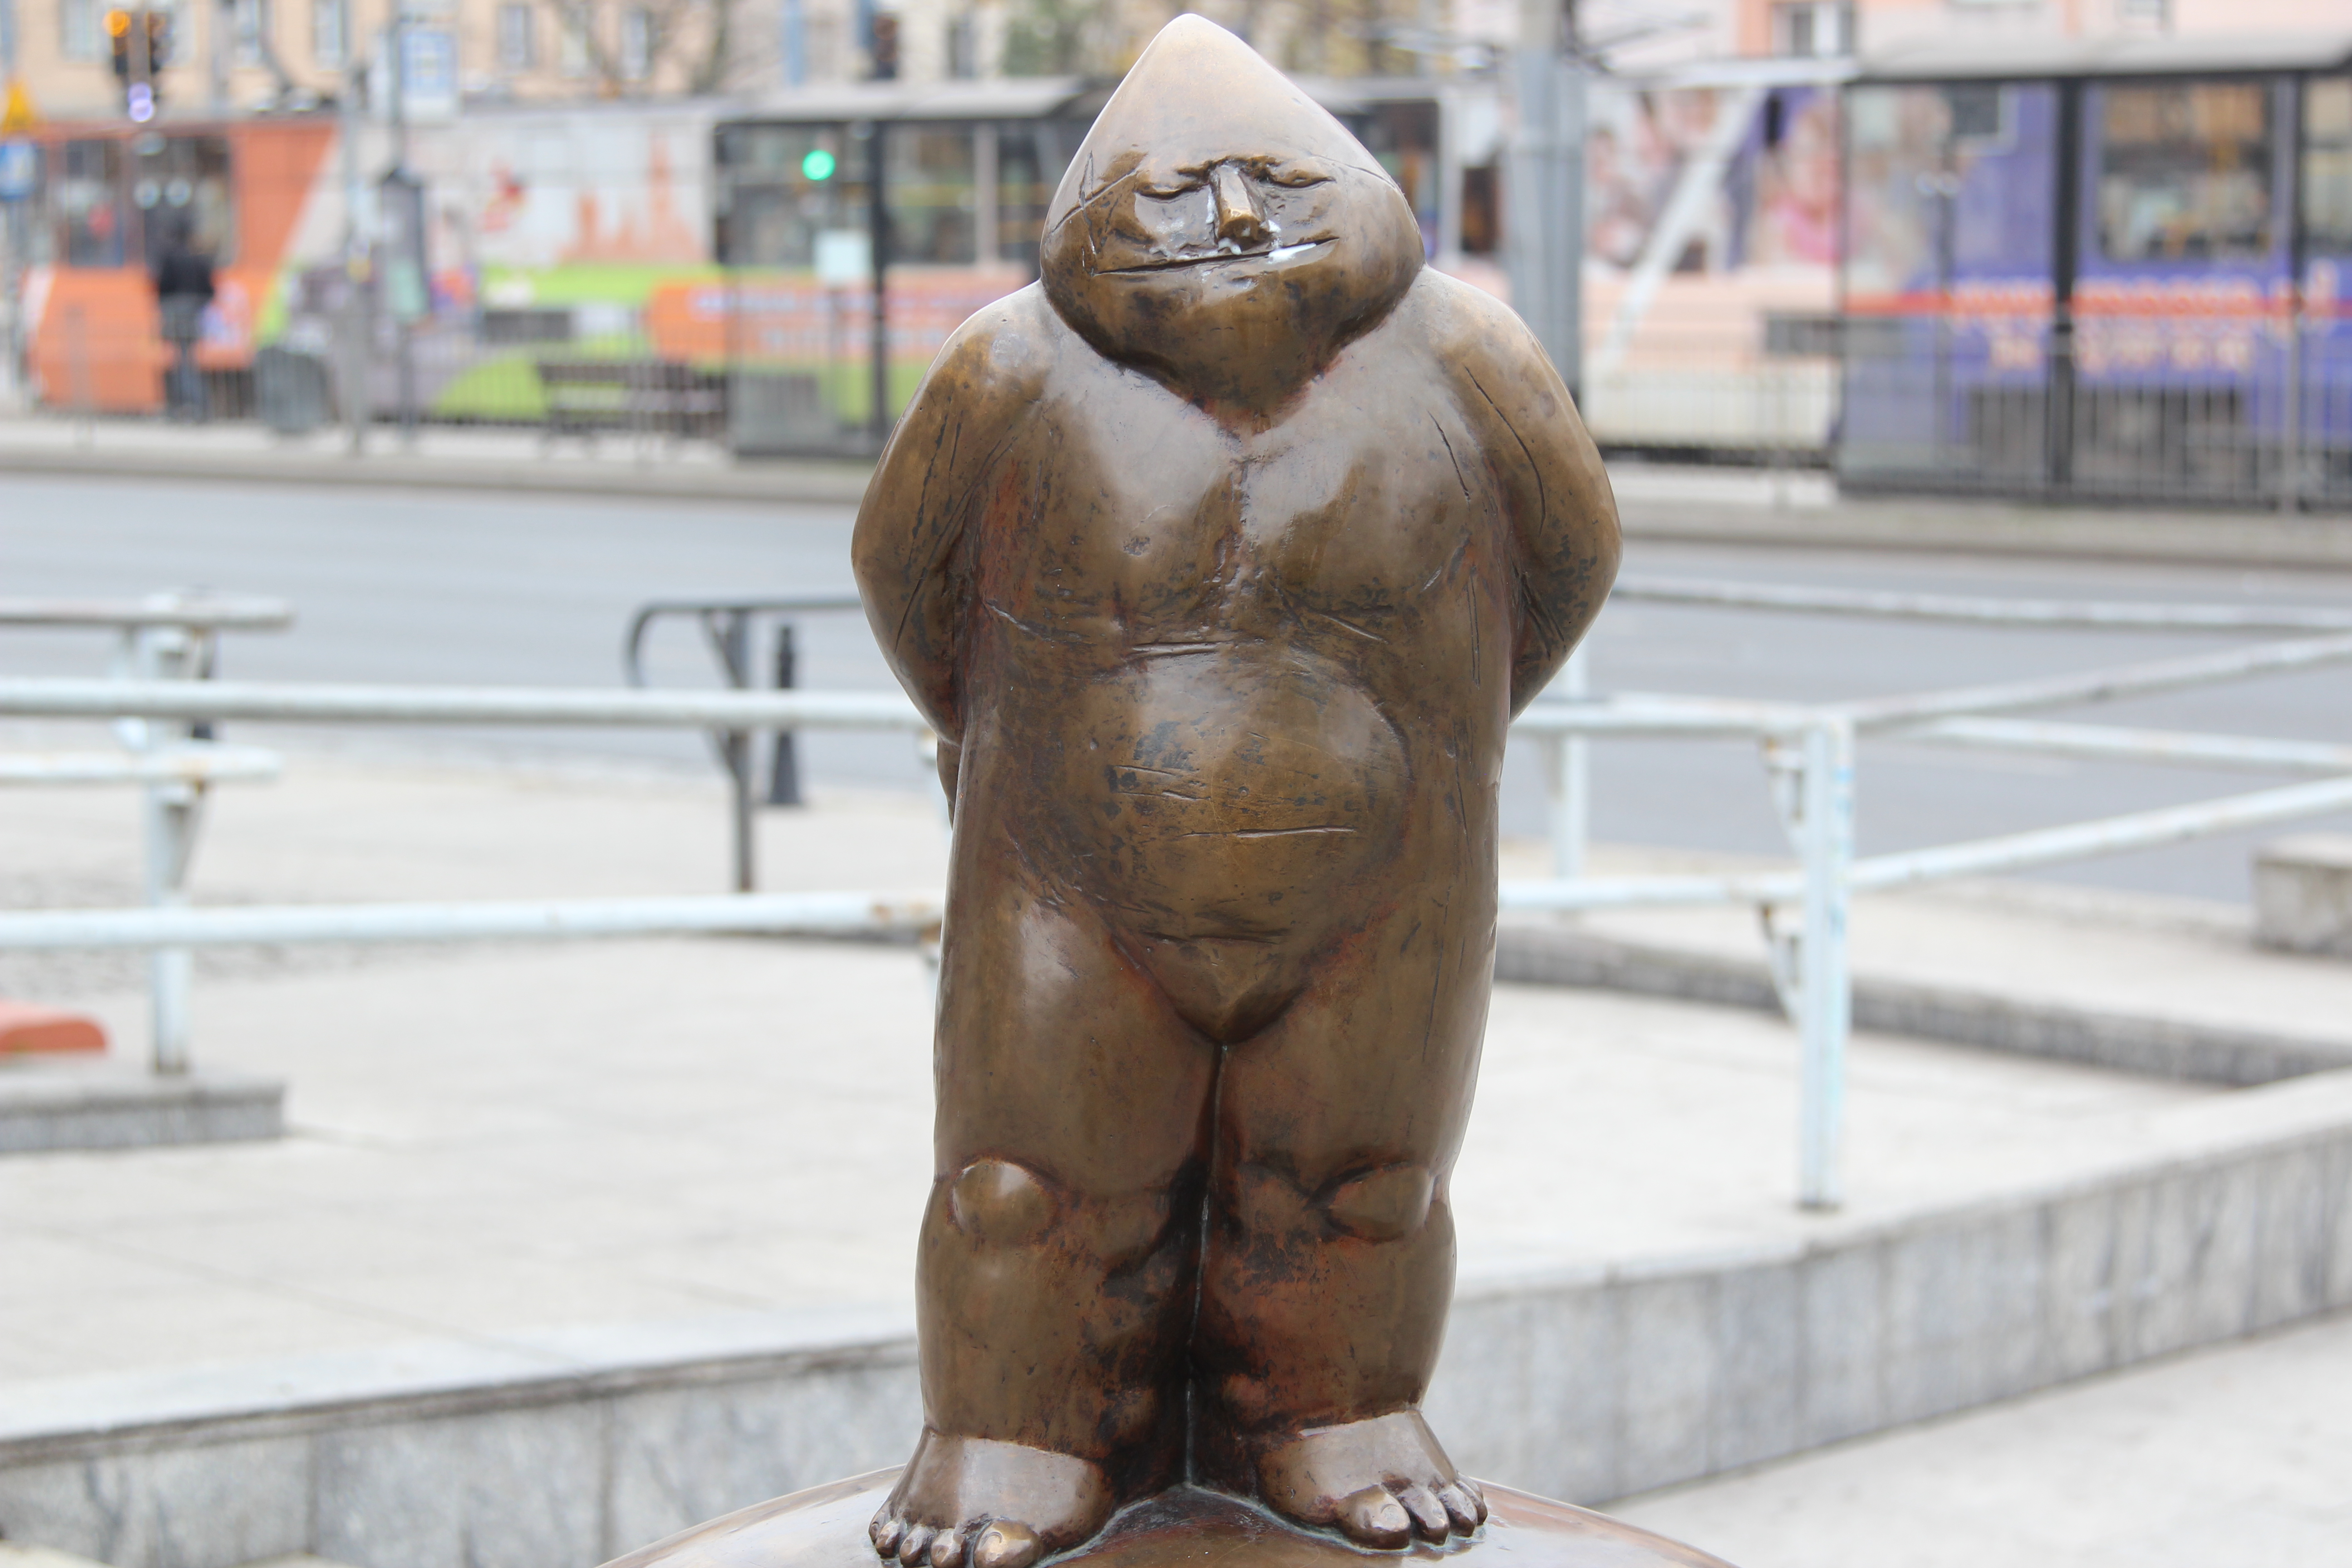 Papa Dwarf (Papa Krasnal) from Świdnicka Street, Wrocław; photo by Pnapora, CC BY-SA 3.0, via Wikimedia Commons